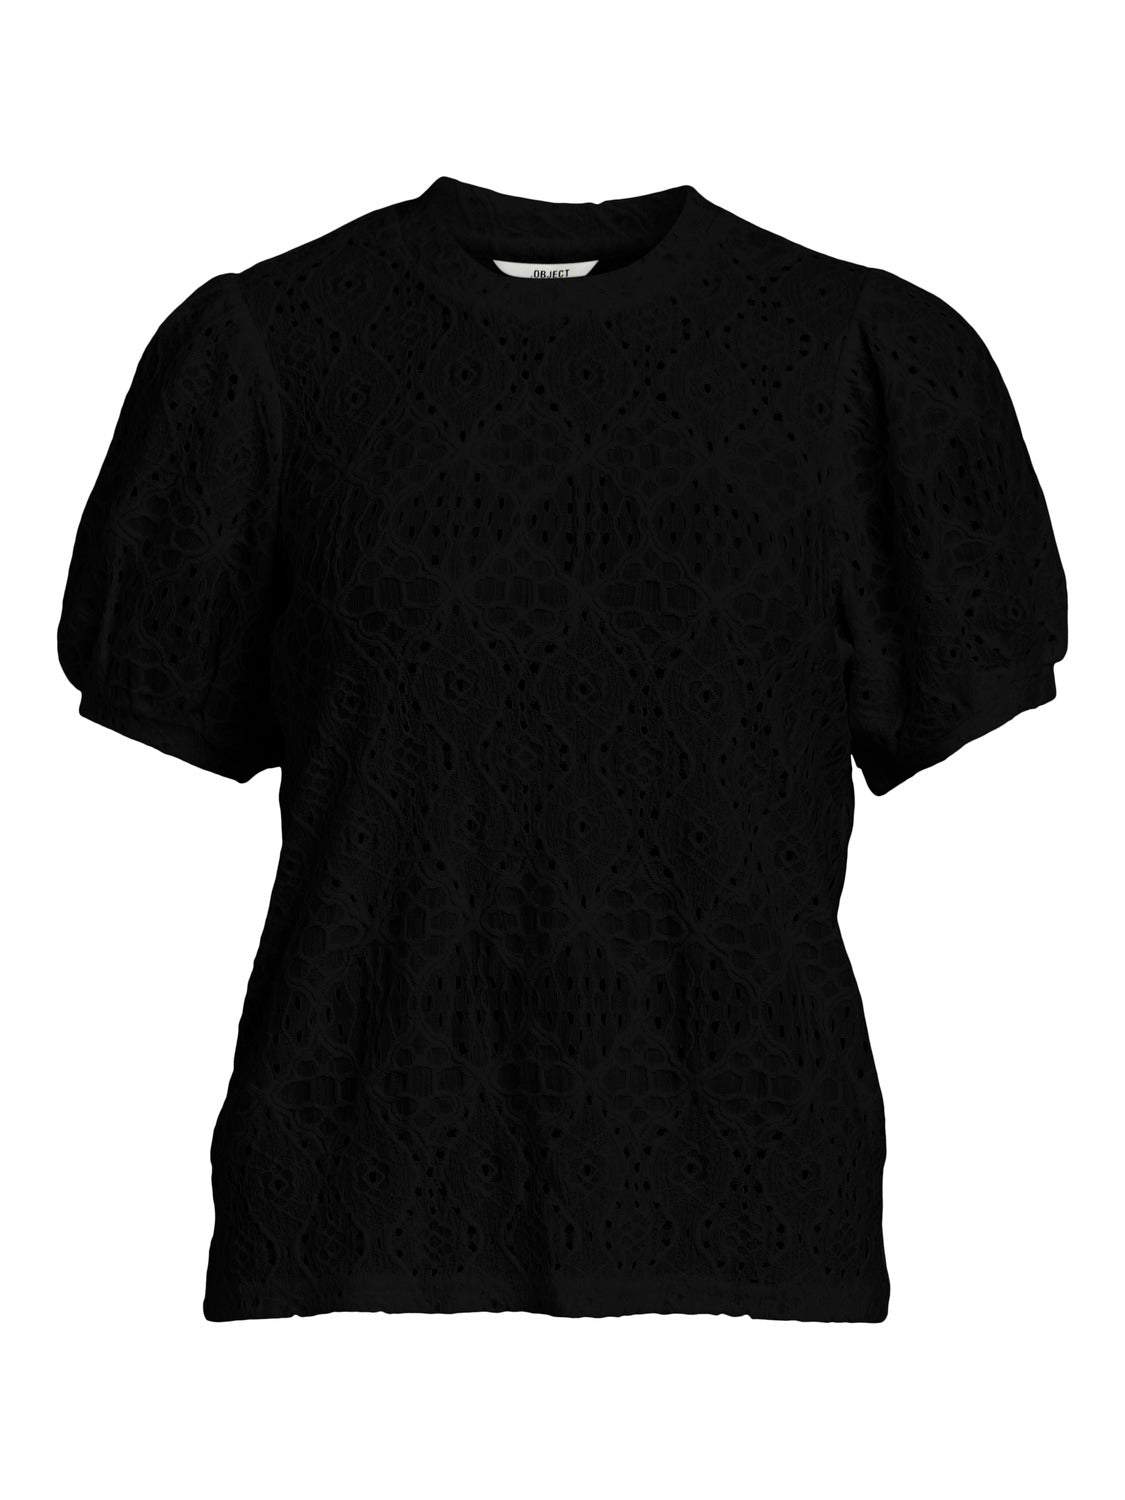 OBJFEODORA T-Shirts & Tops - Black